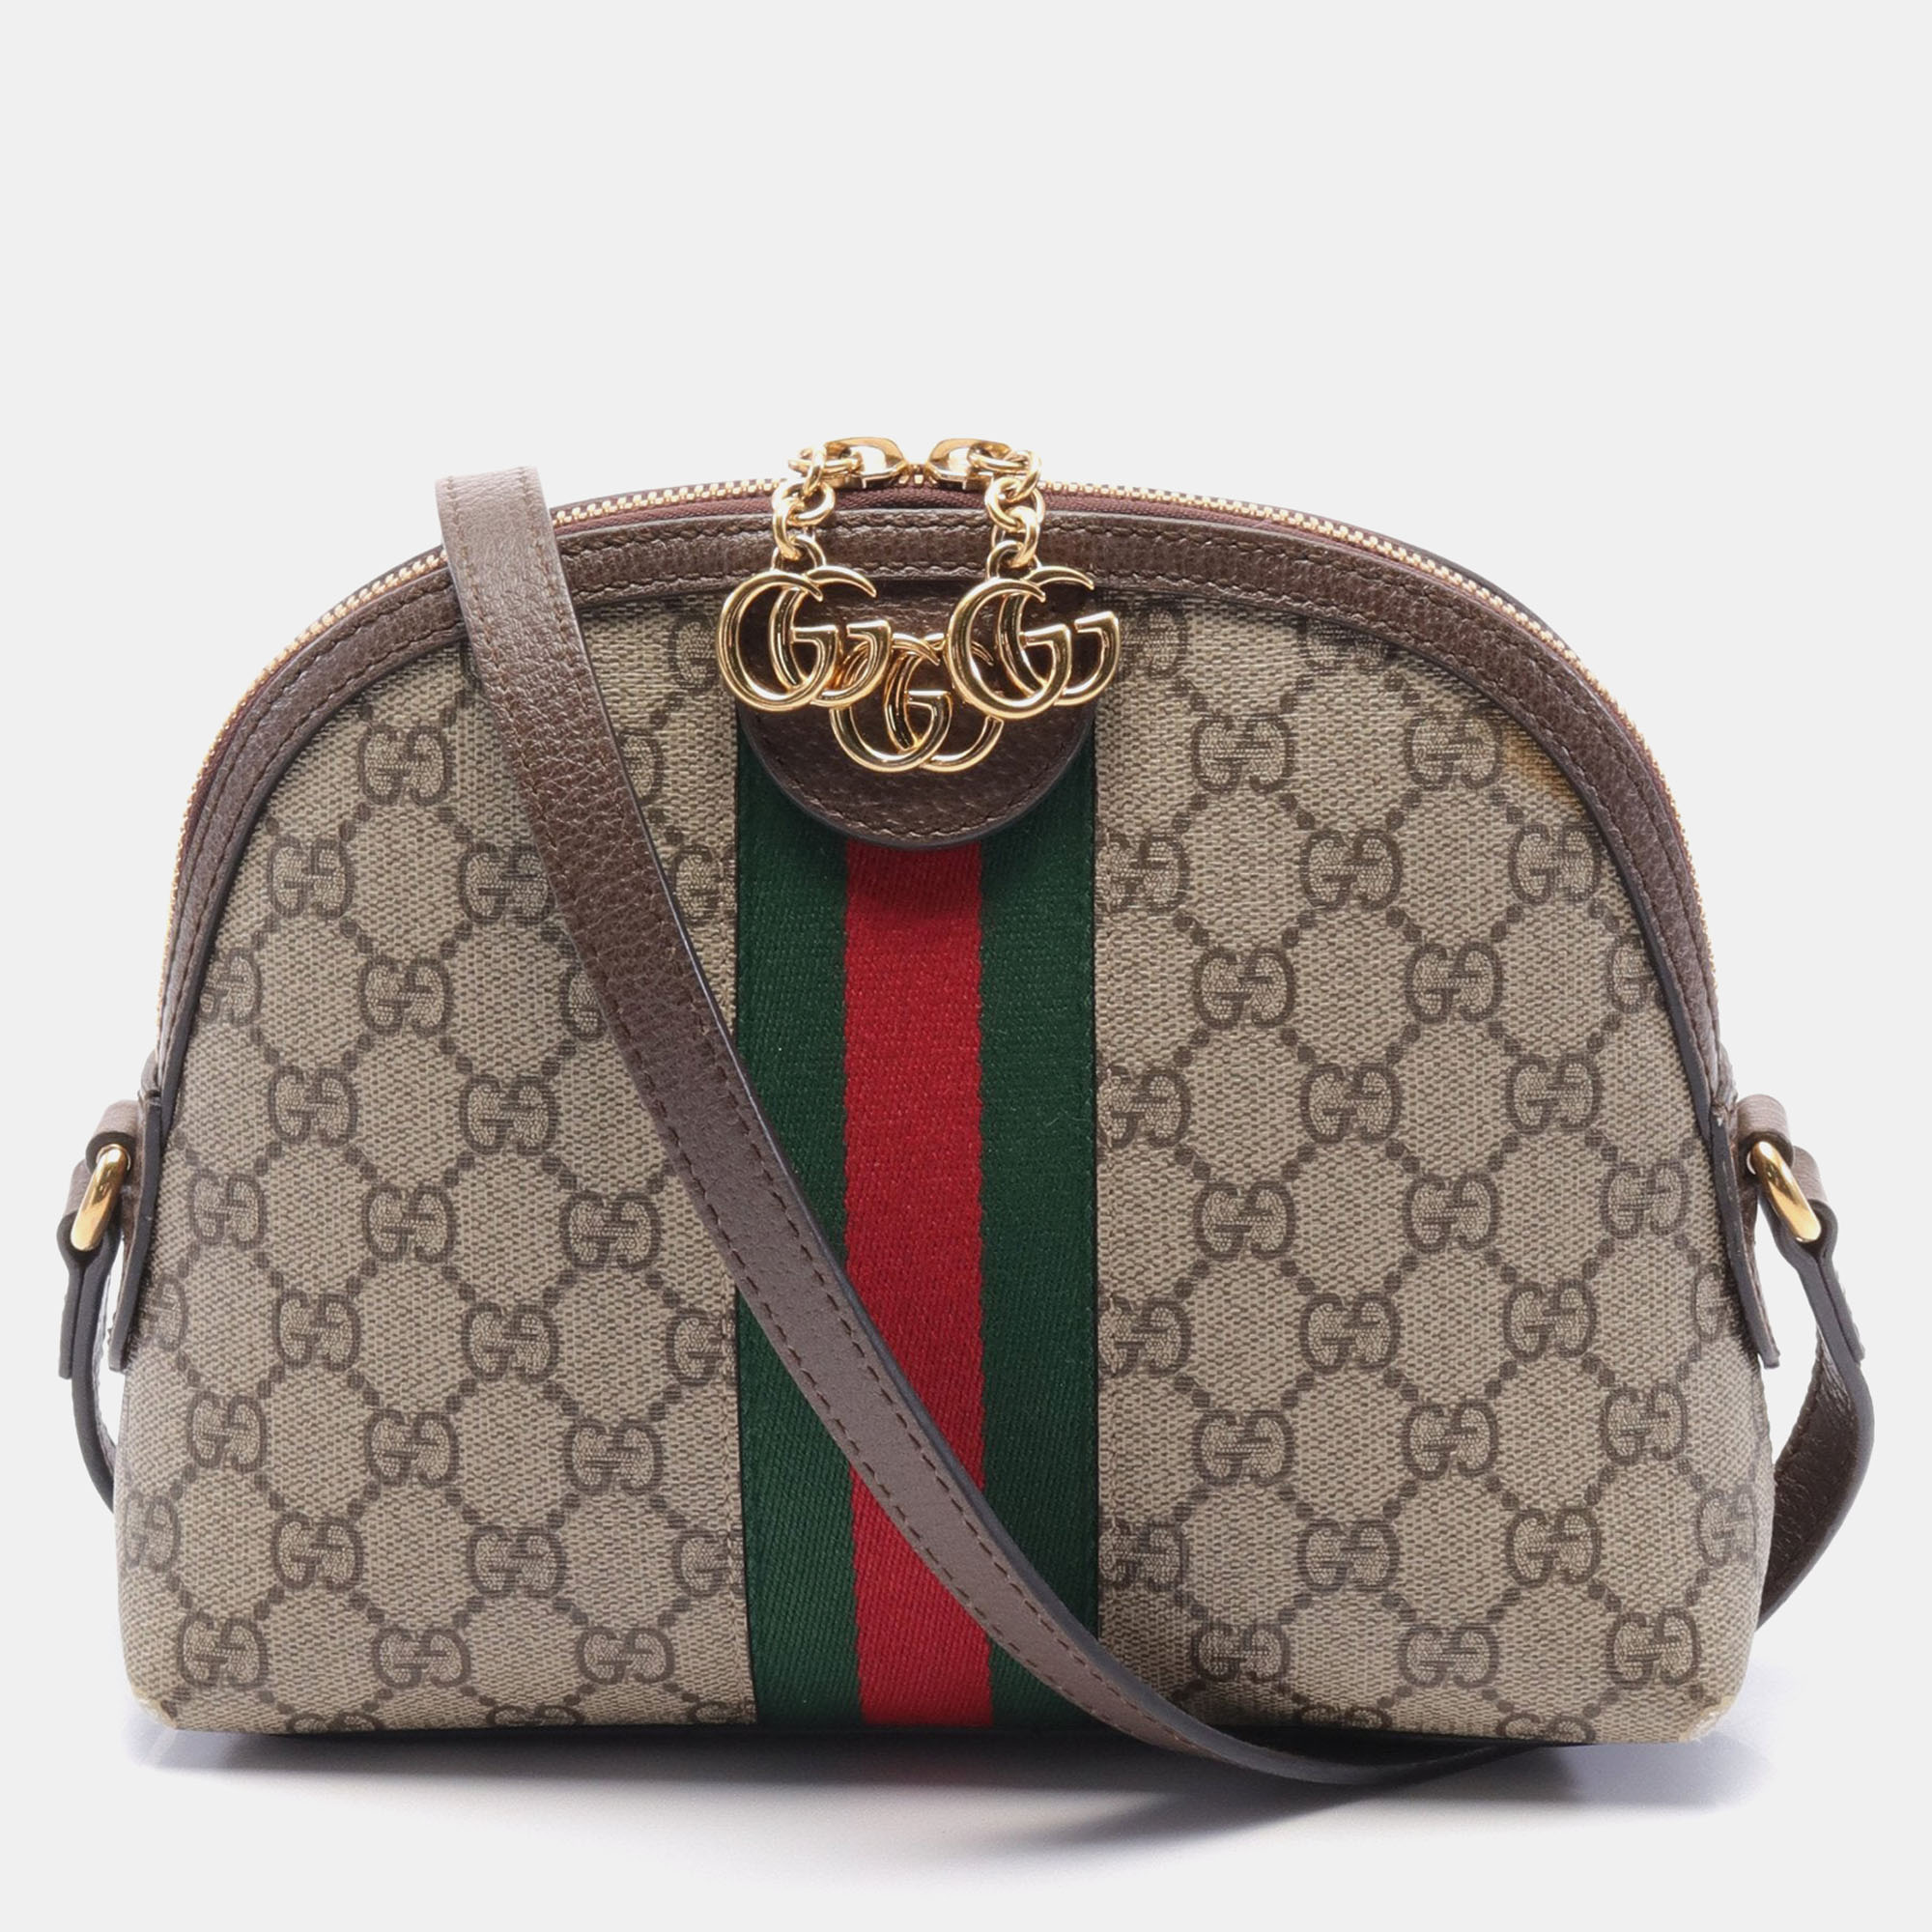 

Gucci Ophidia GG Supreme Shoulder bag PVC Leather Beige Dark brown Multicolor